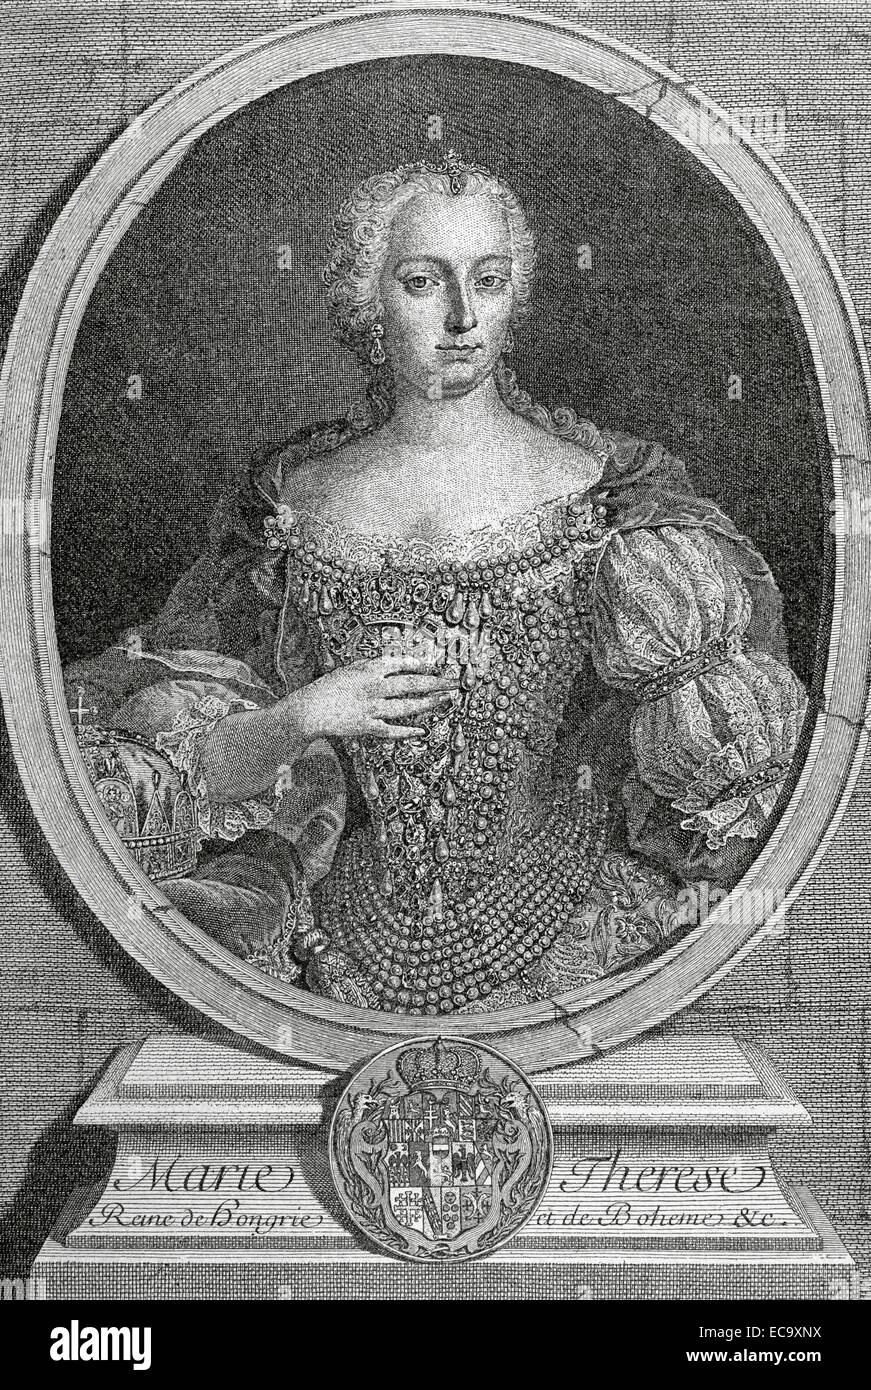 Maria Theresia (1717-1780), Erzherzogin von Österreich, Königin von Ungarn und Böhmen. Porträt. Kupferstich von de Petit, 1743. La Historia Universal, 1885. Stockfoto